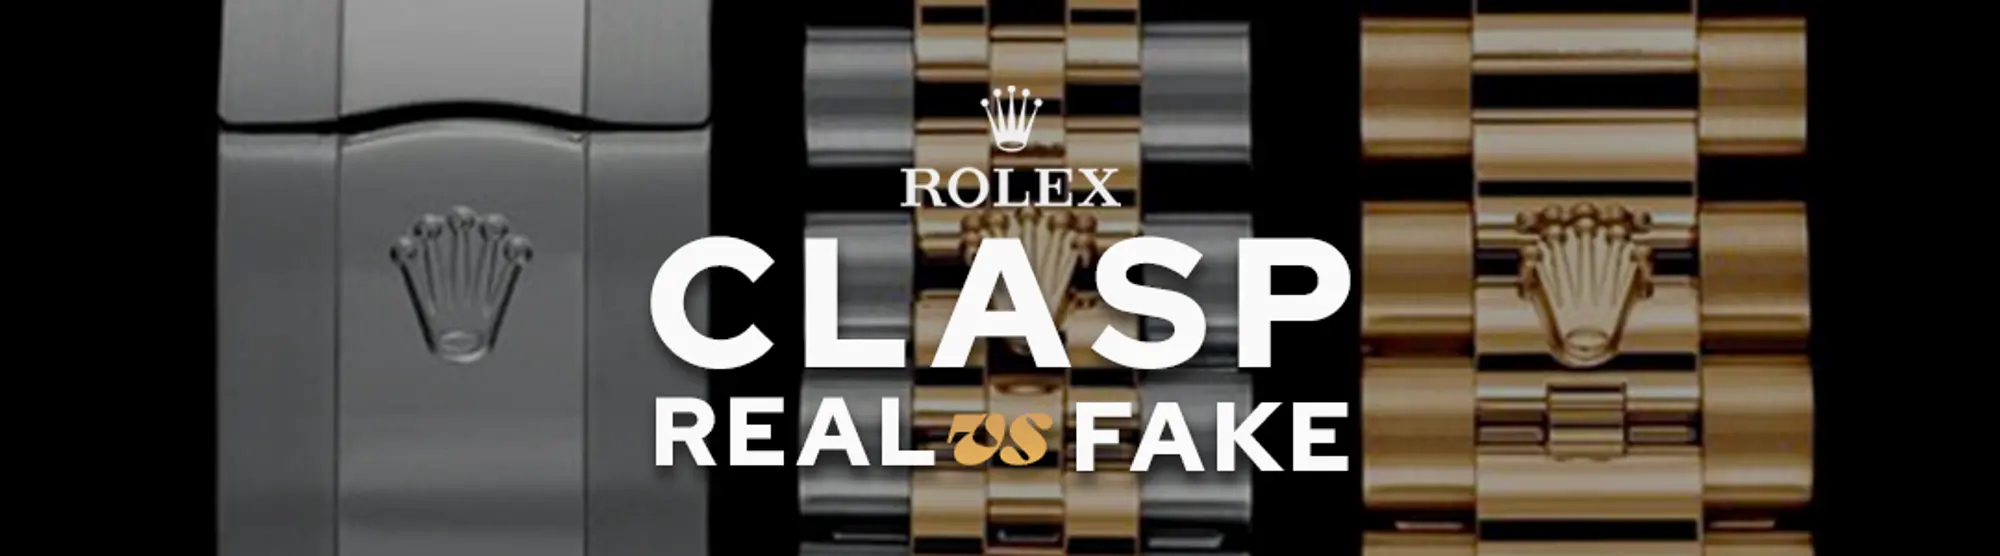 rolex-clasp-real-vs-fake-comparison-banner